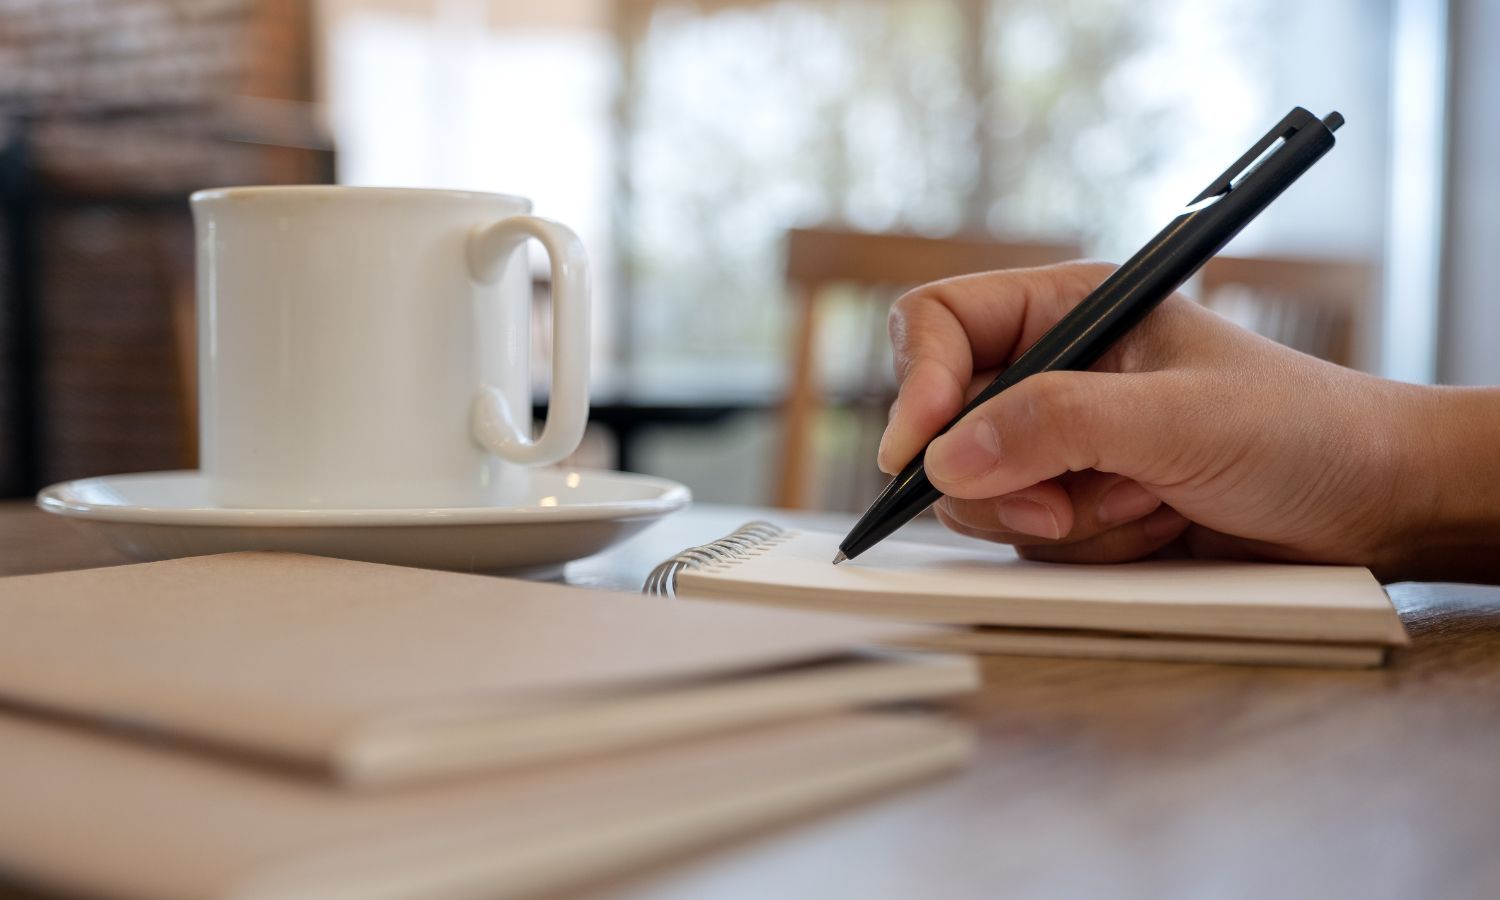 تعبيرية- شخص يمسك بقلم ويكتب على دفتر يجاوره فنجان قهوة